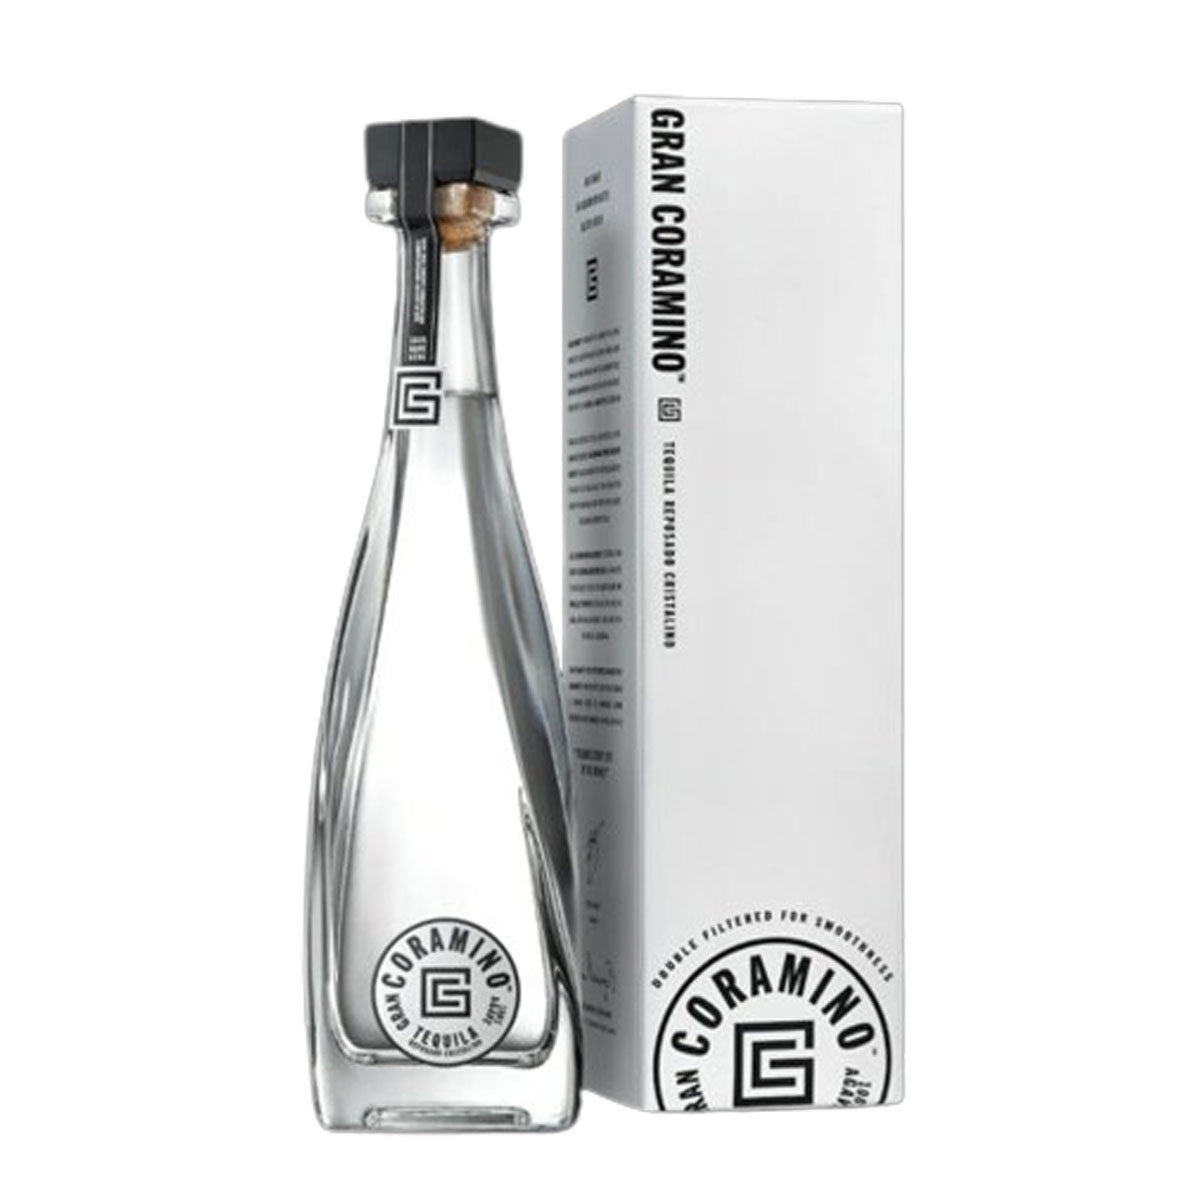 TAG Liquor Stores BC - Gran Coramino Cristalino Reposado Tequila 750ml